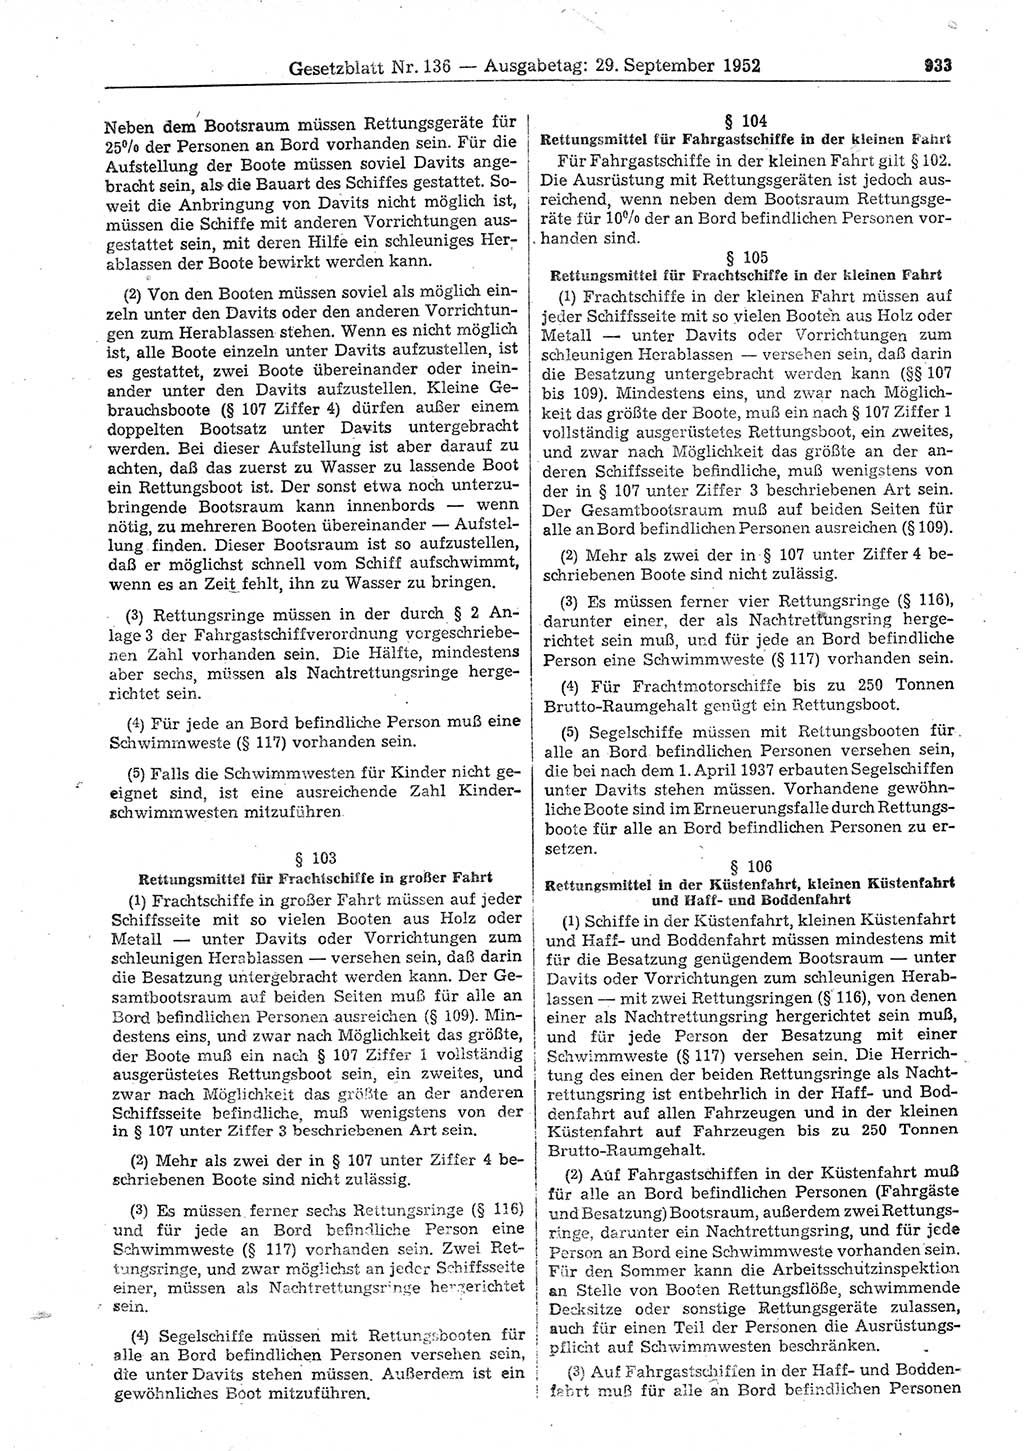 Gesetzblatt (GBl.) der Deutschen Demokratischen Republik (DDR) 1952, Seite 933 (GBl. DDR 1952, S. 933)